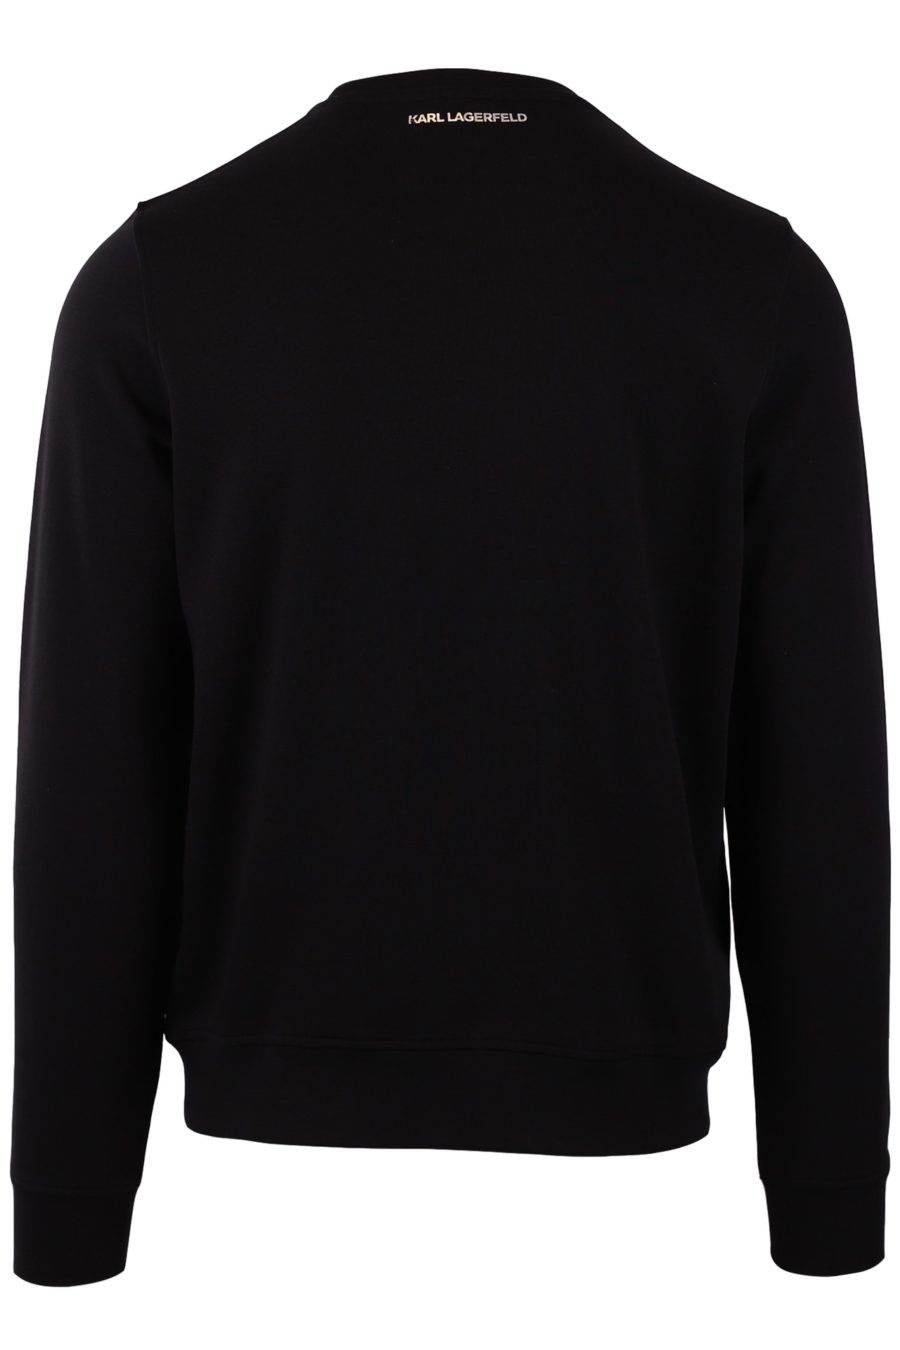 Black sweatshirt with triple "Karl" - 85dc776666b815d82b3ac1c9c6946b279af9baac52